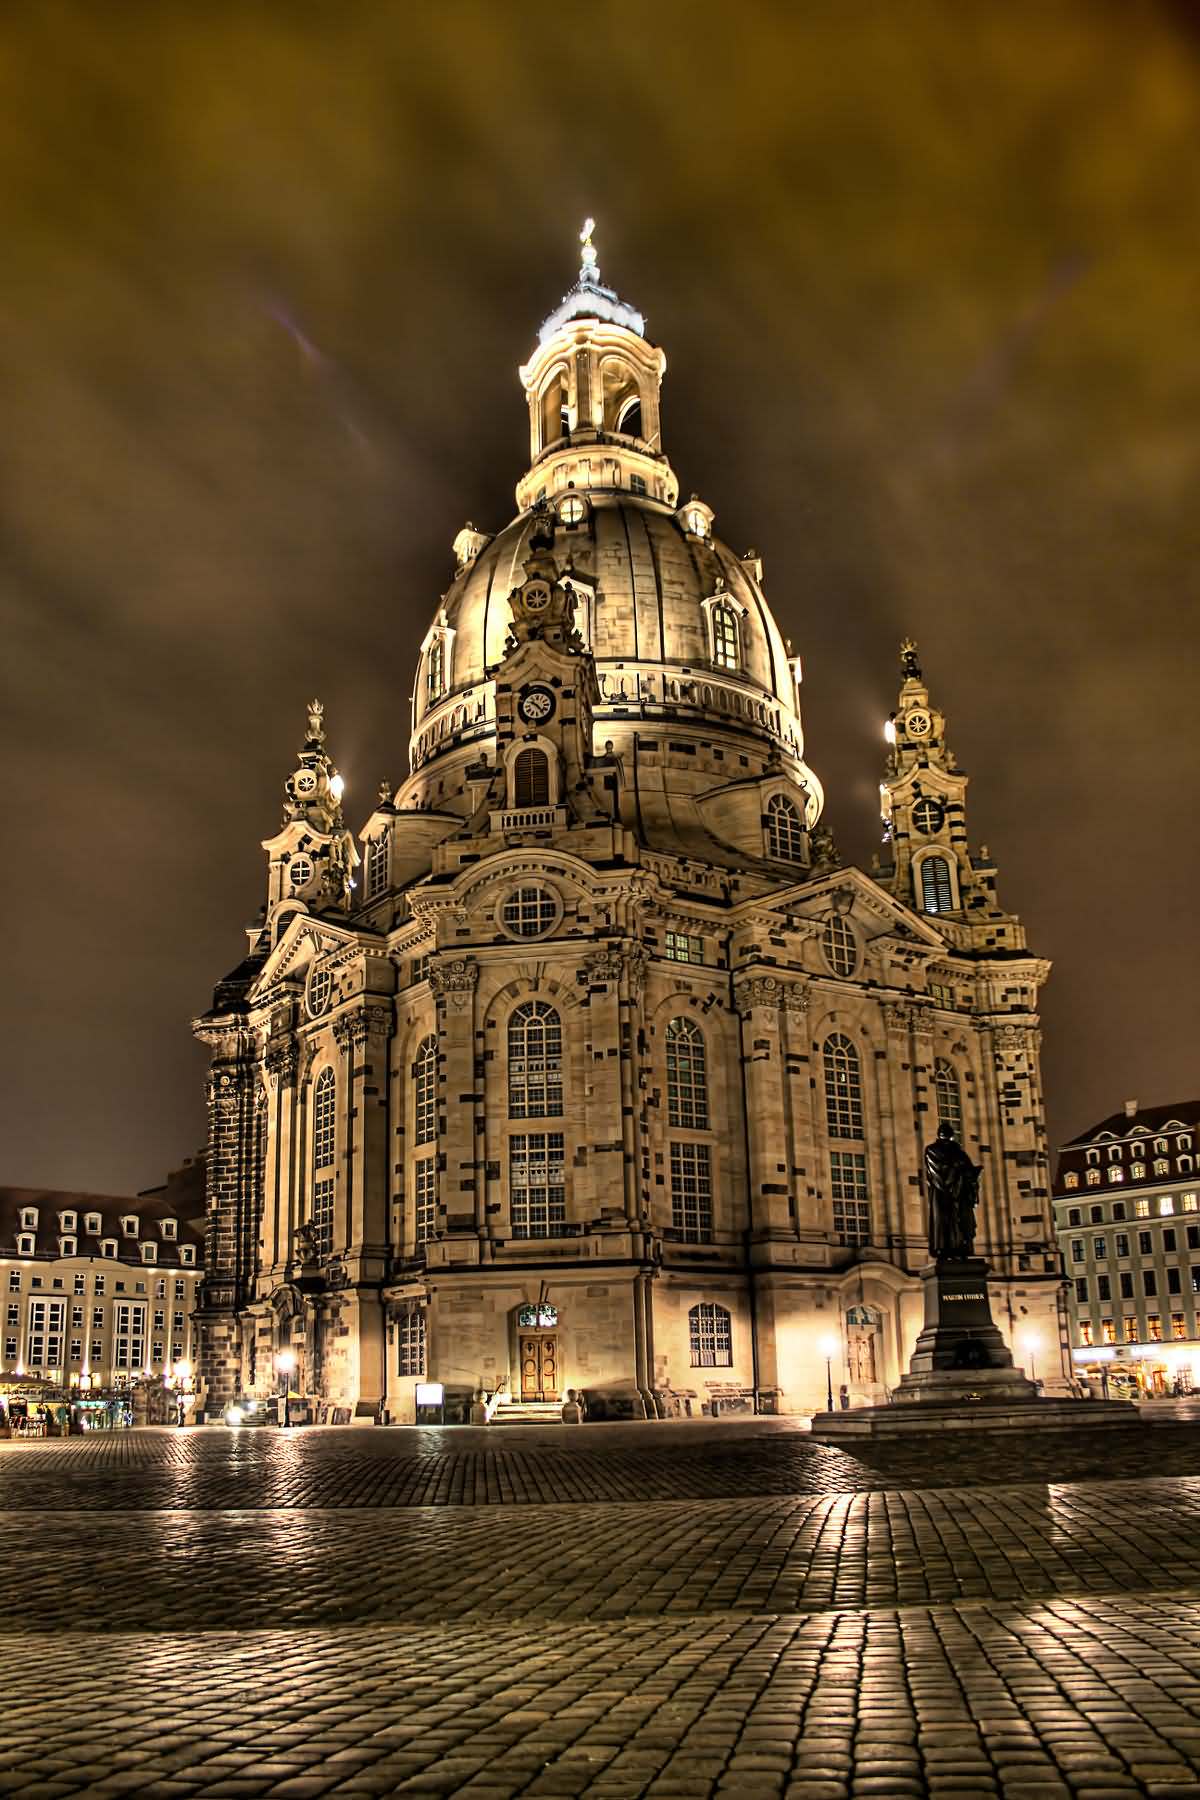 Dresden Frauenkirche Lit up at night